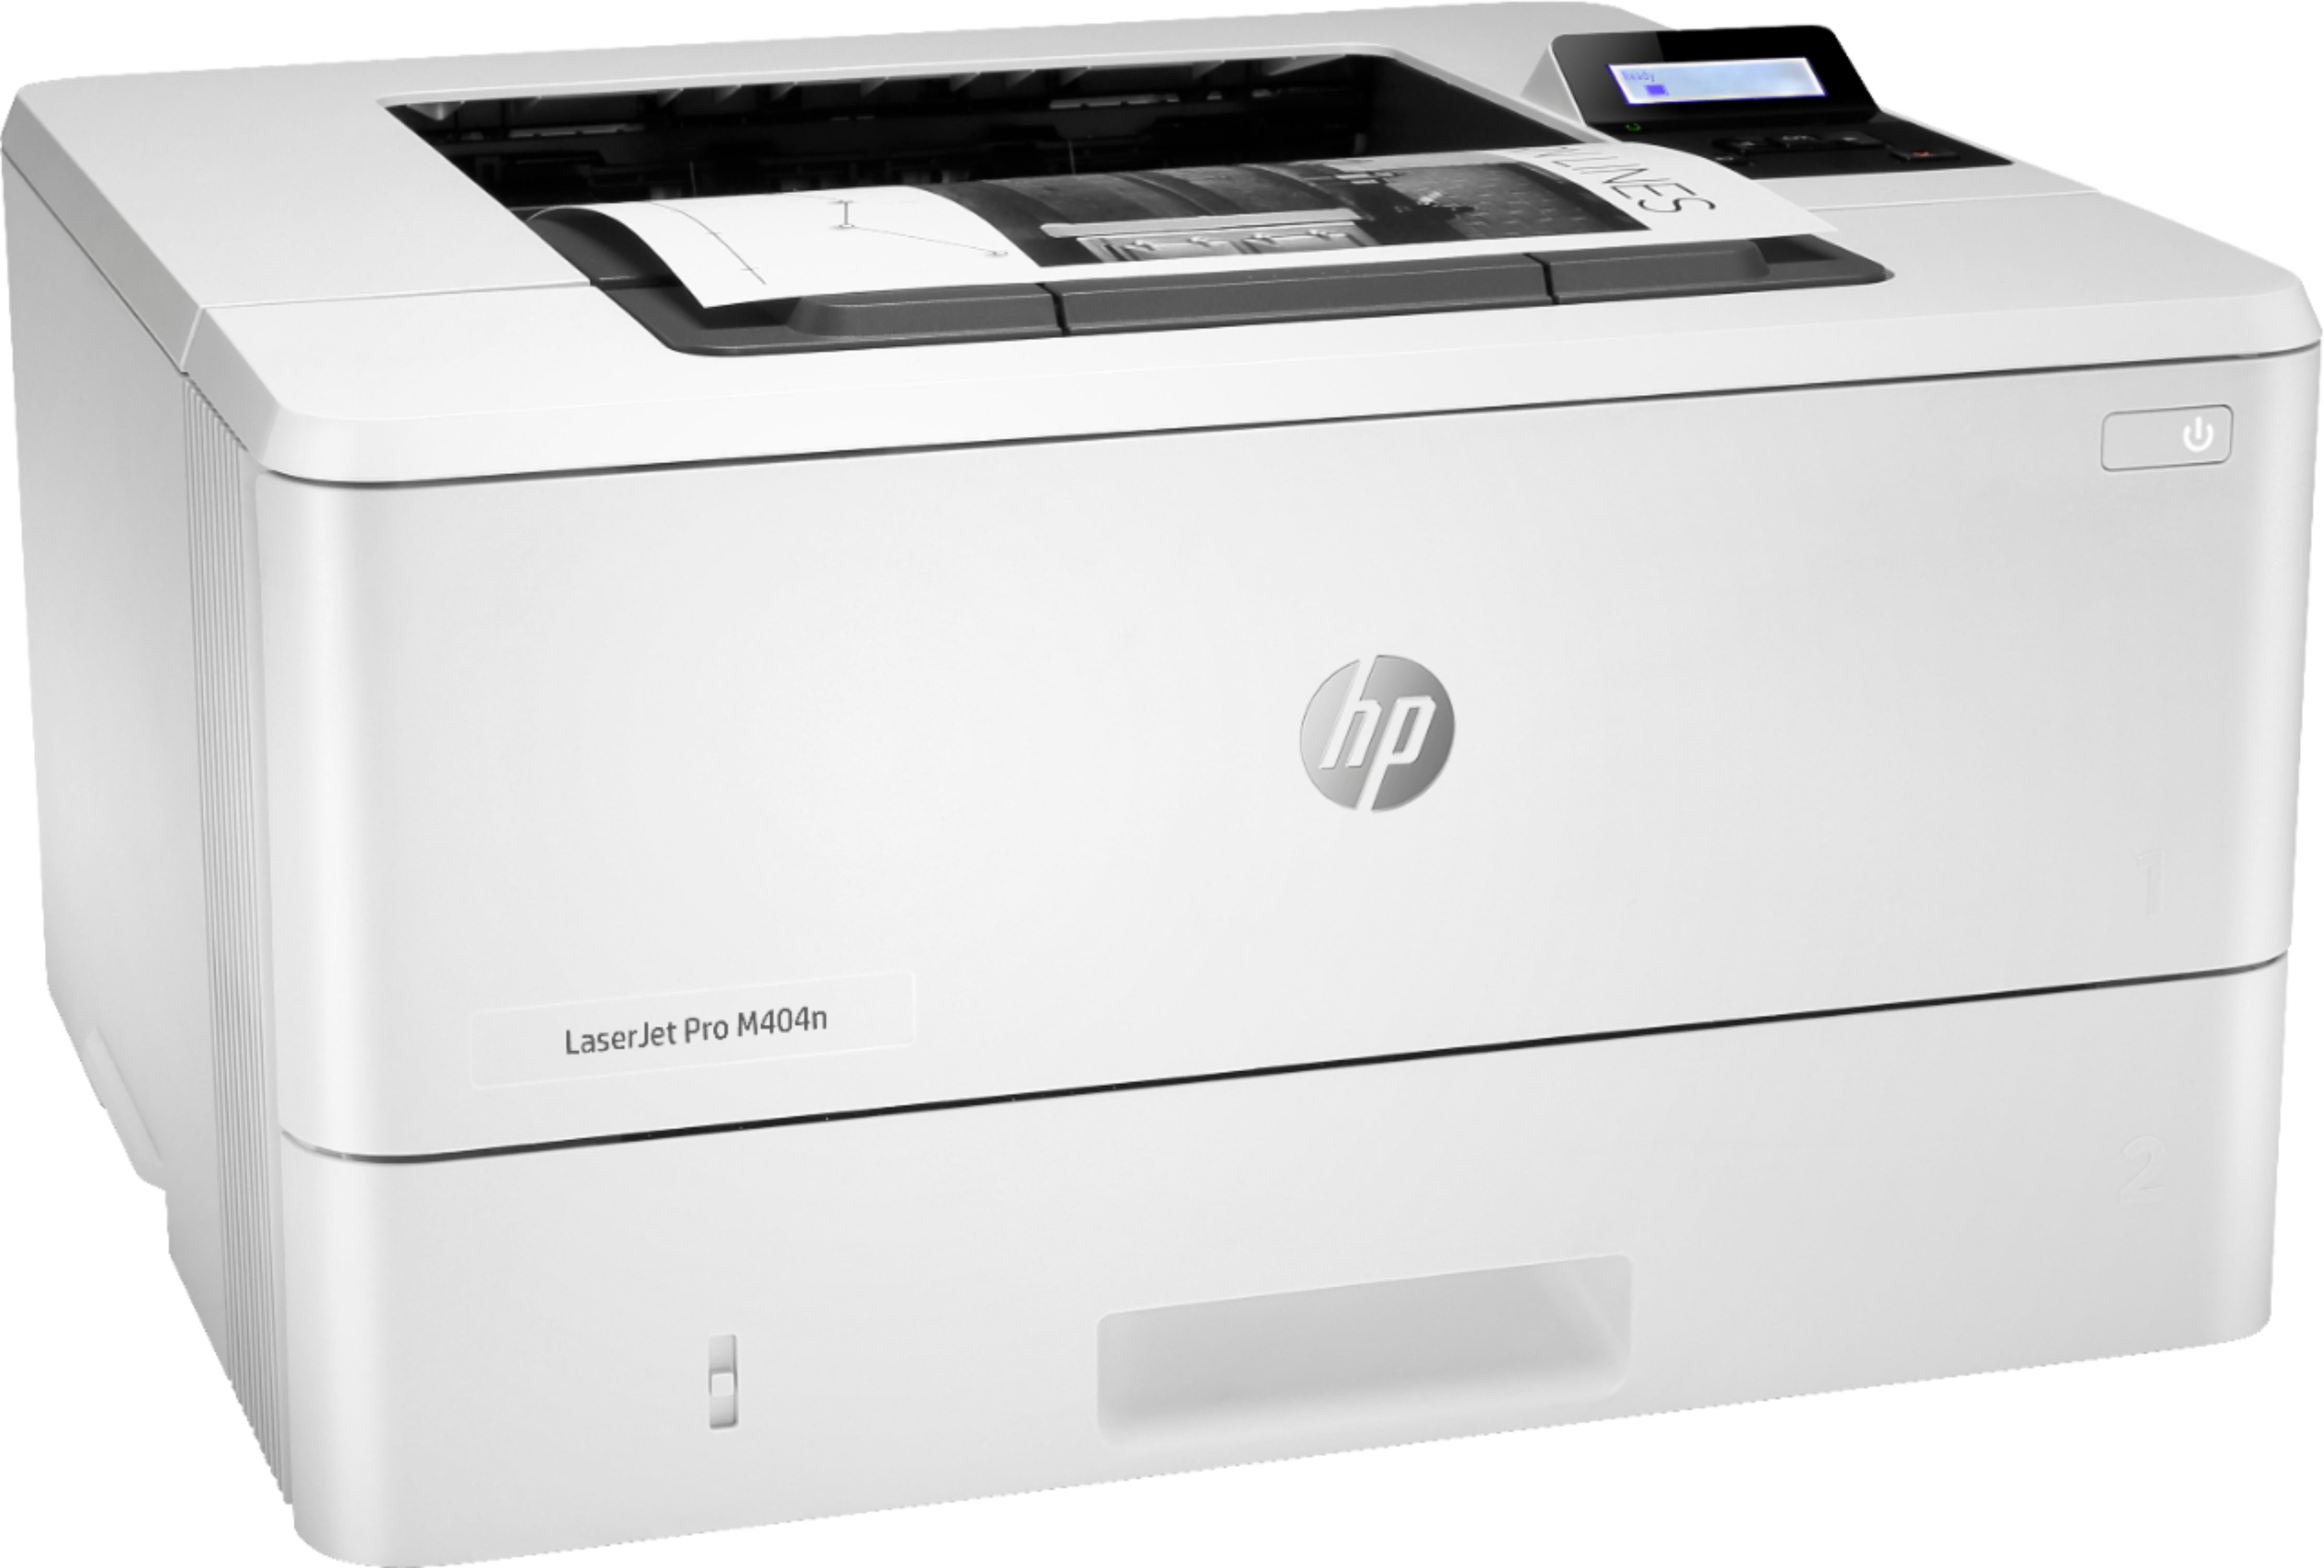 Angle View: HP - Refurbished  LaserJet Pro M404N  Printer - White